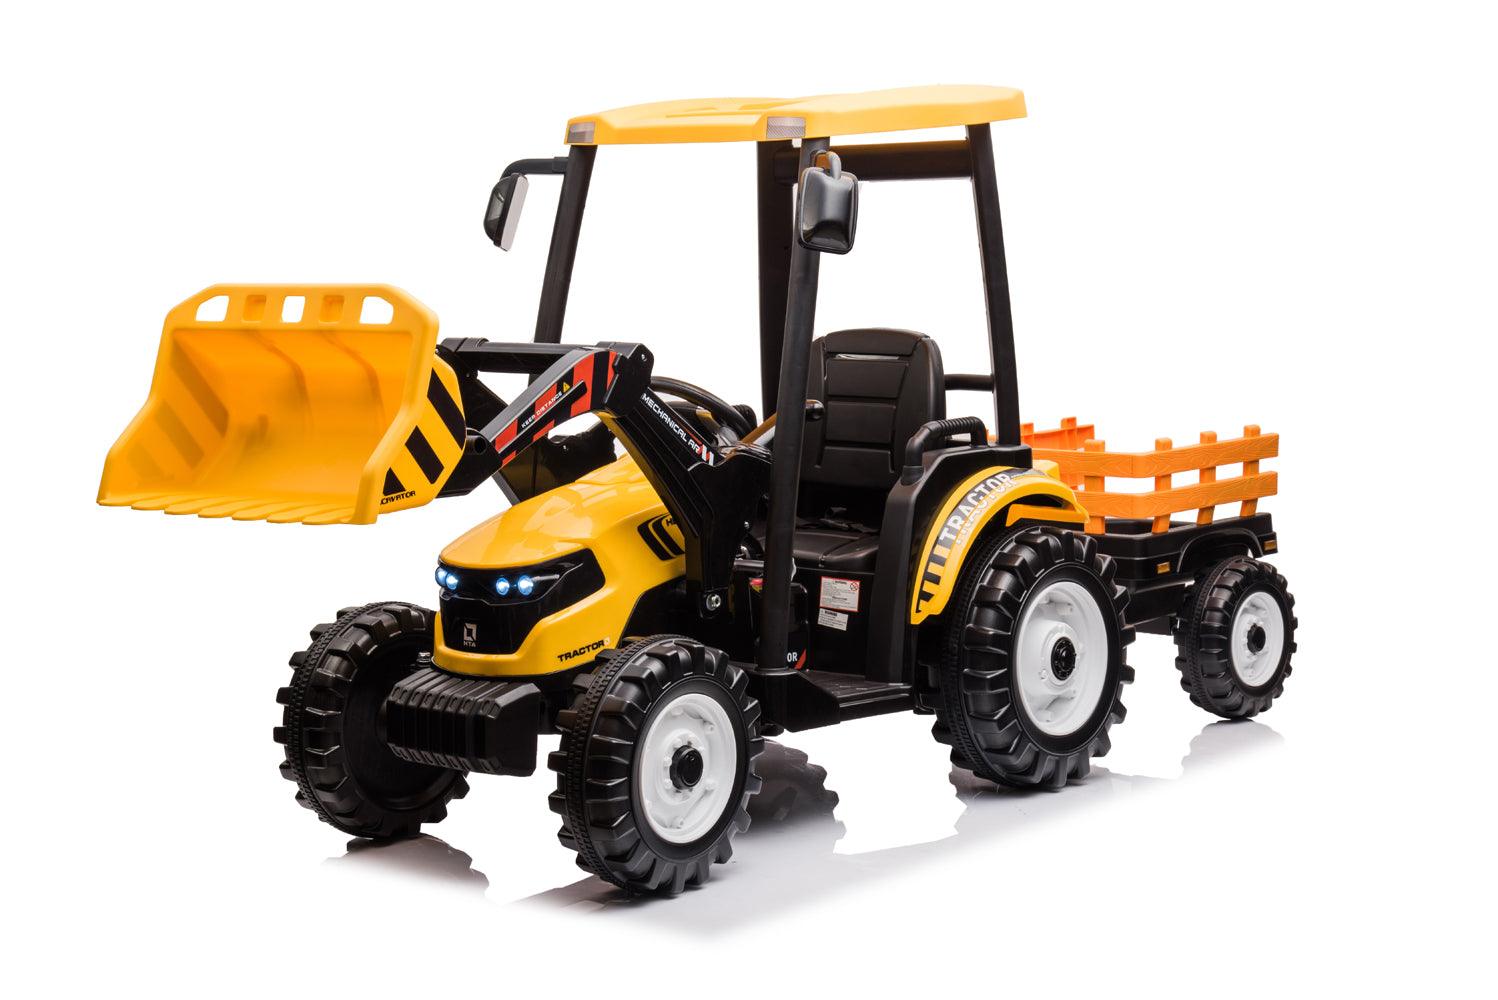 Elektro Kinder Traktor Pushdozer – Ein spannendes Abenteuer für junge Bauarbeiter - kidsdrive.net - Rideonkidcar - Elektroauto für Kinder - Geschenkidee - Kinderfahrzeug